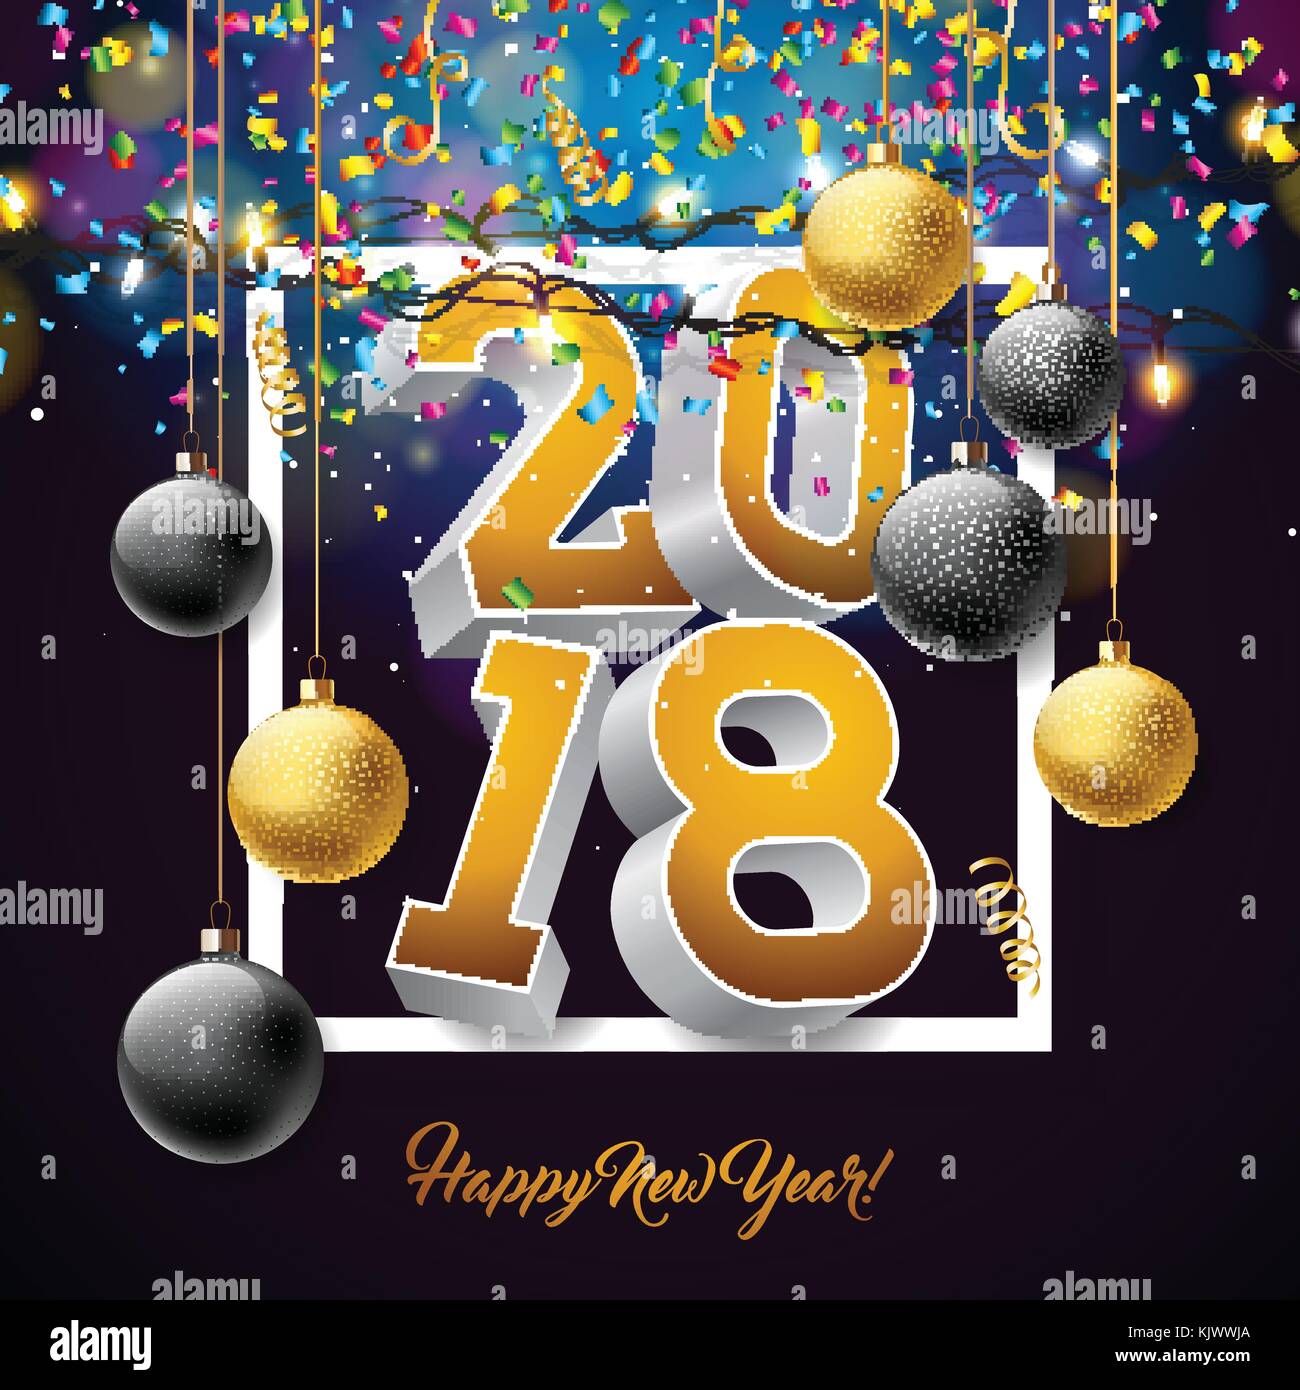 Vector felice anno nuovo 2018 illustrazione con 3d numero, caduta di coriandoli e sfera ornamentali su sfondo lucido. eps10. Illustrazione Vettoriale